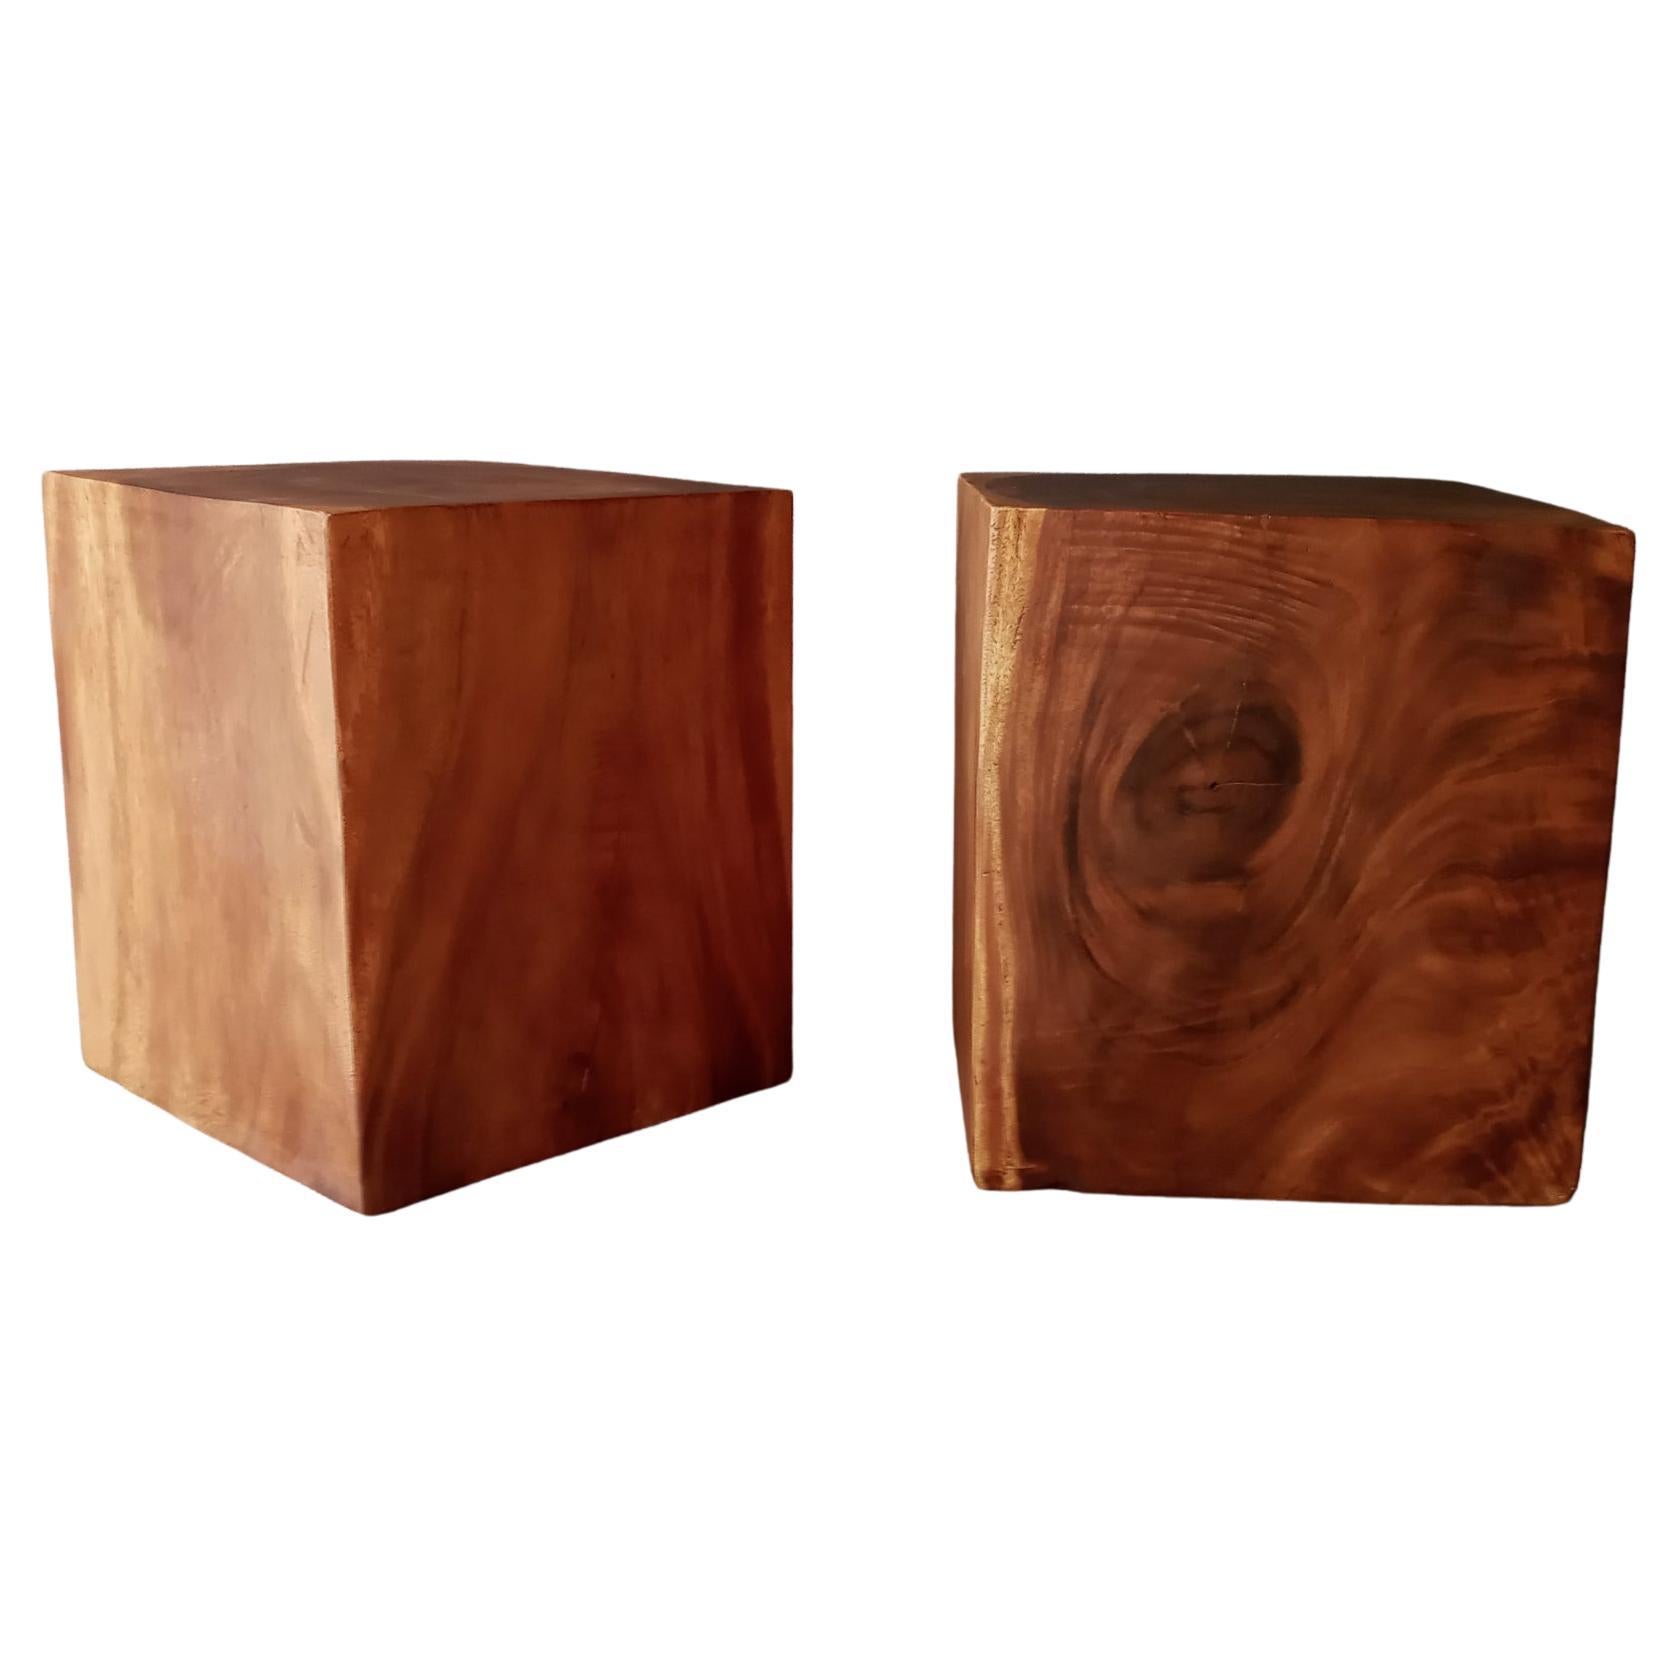 Une paire de tables d'appoint en teck massif en forme de cube. Ce sont des beautés vintage avec un grainage spectaculaire et une patine chaude. Chacune d'entre elles possède un noyau creusé, mais les parois ont une épaisseur d'environ 3 pouces pour